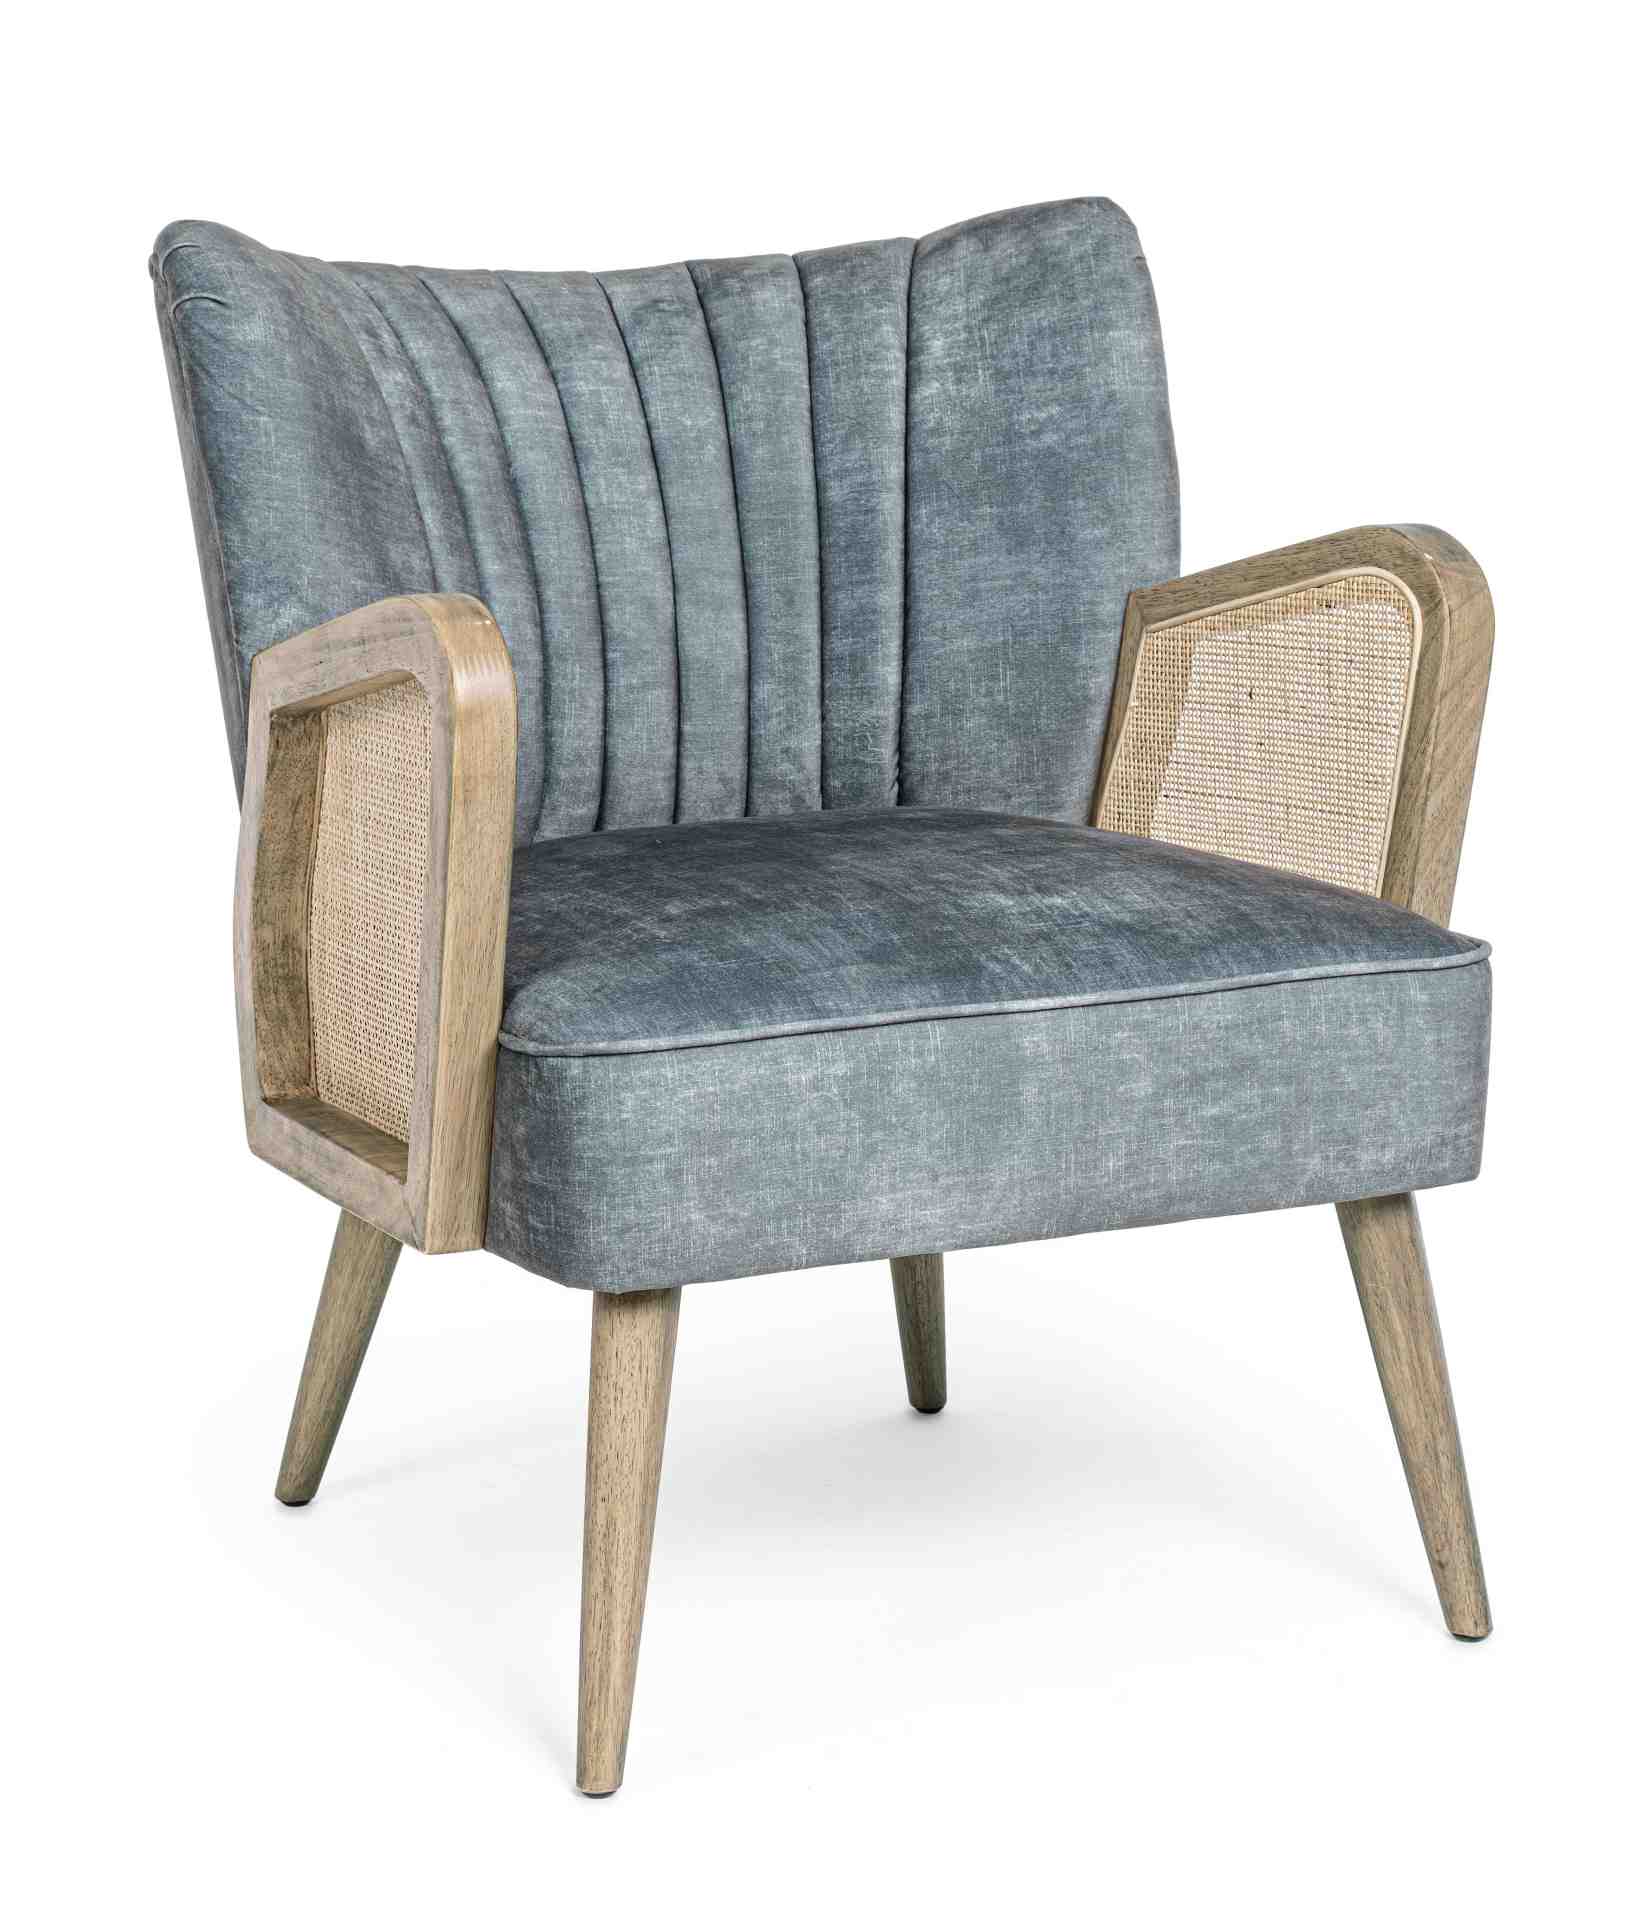 Der Sessel Virna überzeugt mit seinem modernen Design. Gefertigt wurde er aus Stoff in Samt-Optik, welcher einen blauen Farbton besitzt. Das Gestell ist aus Kautschukholz und hat eine natürliche Farbe. Der Sessel besitzt eine Sitzhöhe von 44 cm. Die Breit